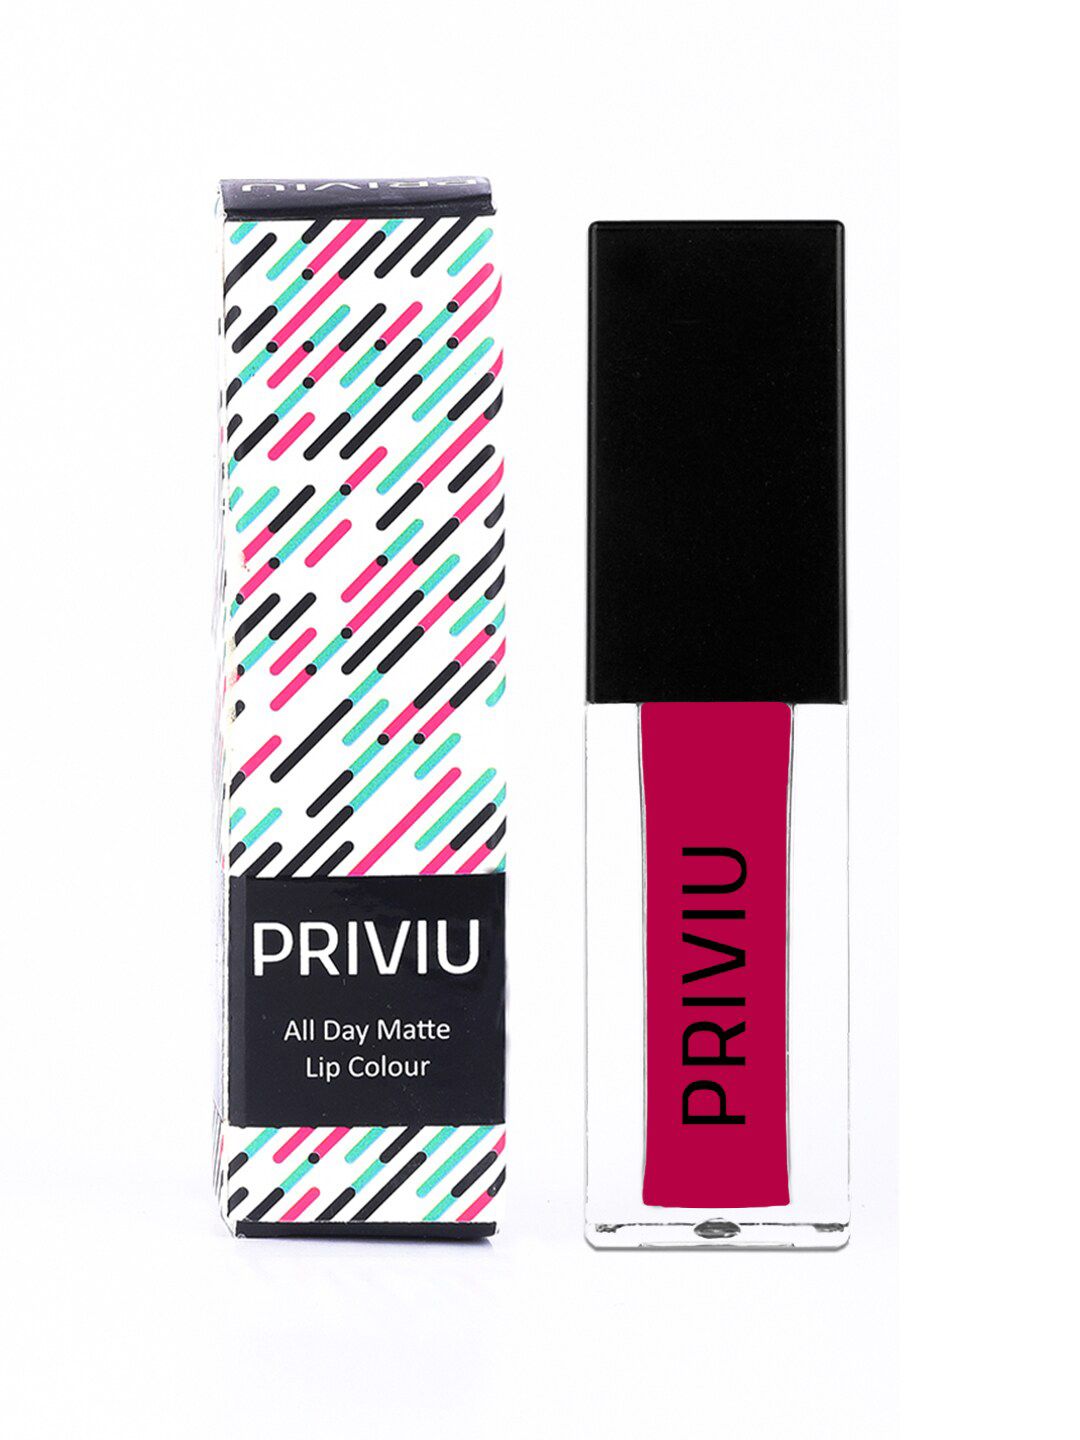 PRIVIU All Day Matte Liquid Lipstick - Fuchsia Pink Price in India